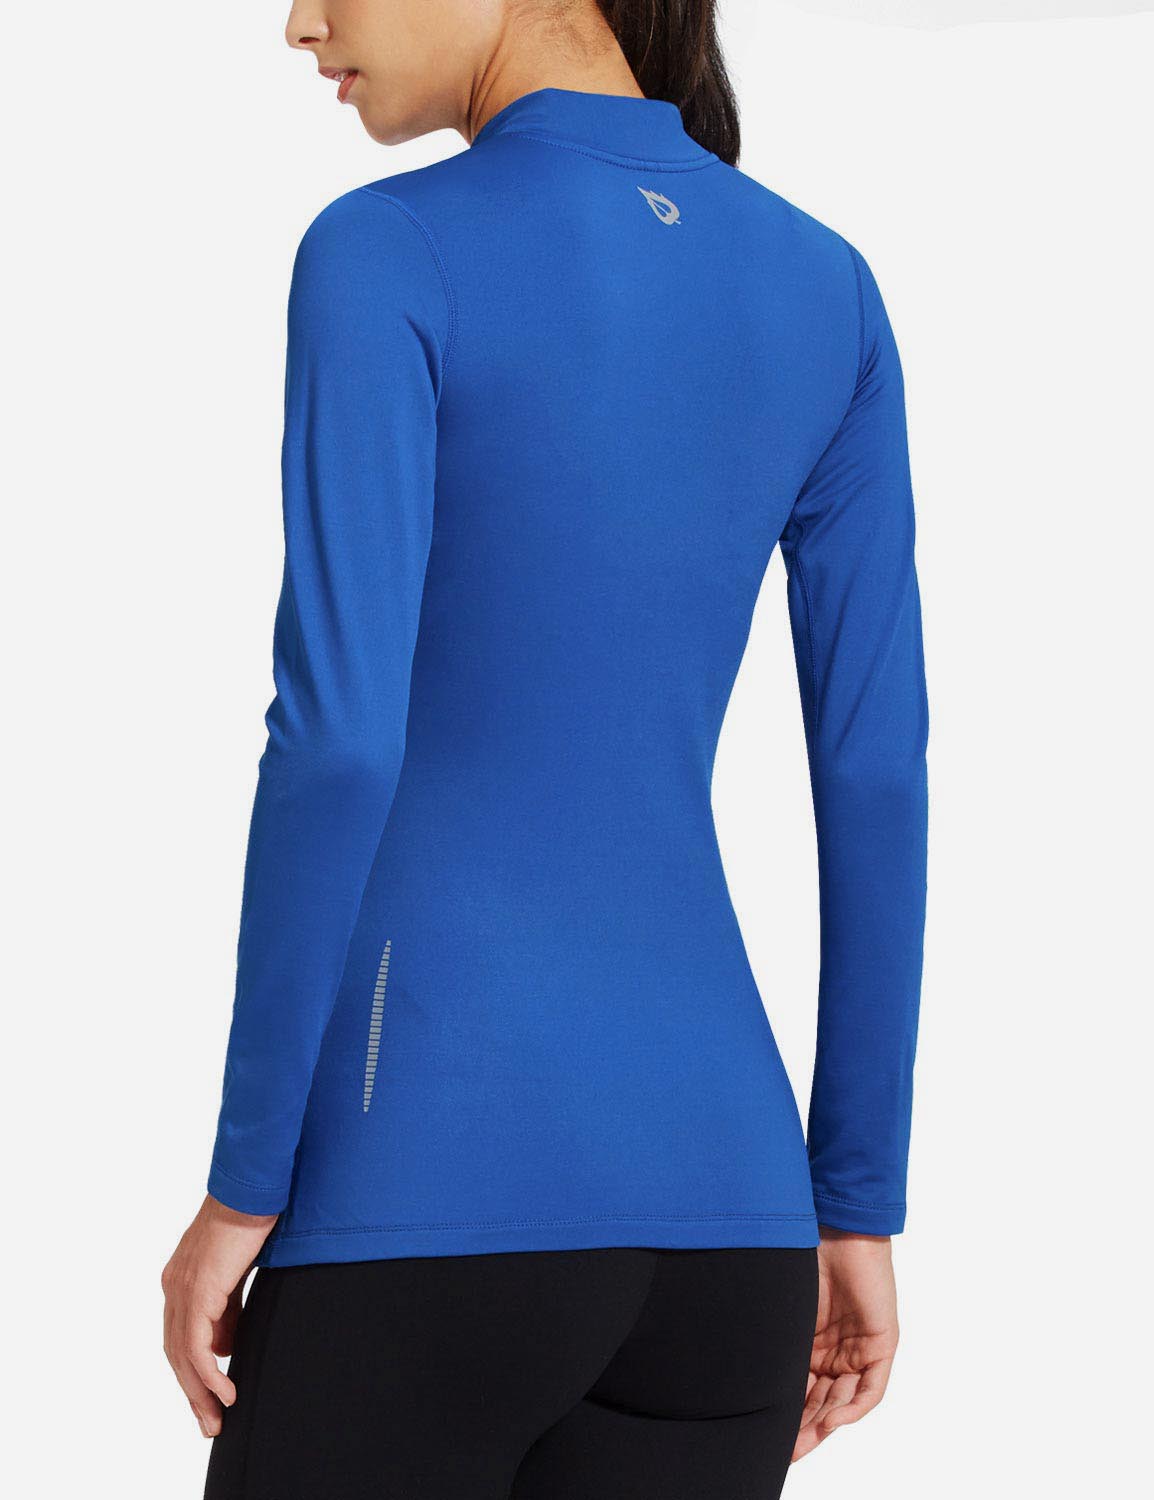 Baleaf Women's Basic Compression Mock-Neck Long Sleeved Shirt abd166 Blue Back